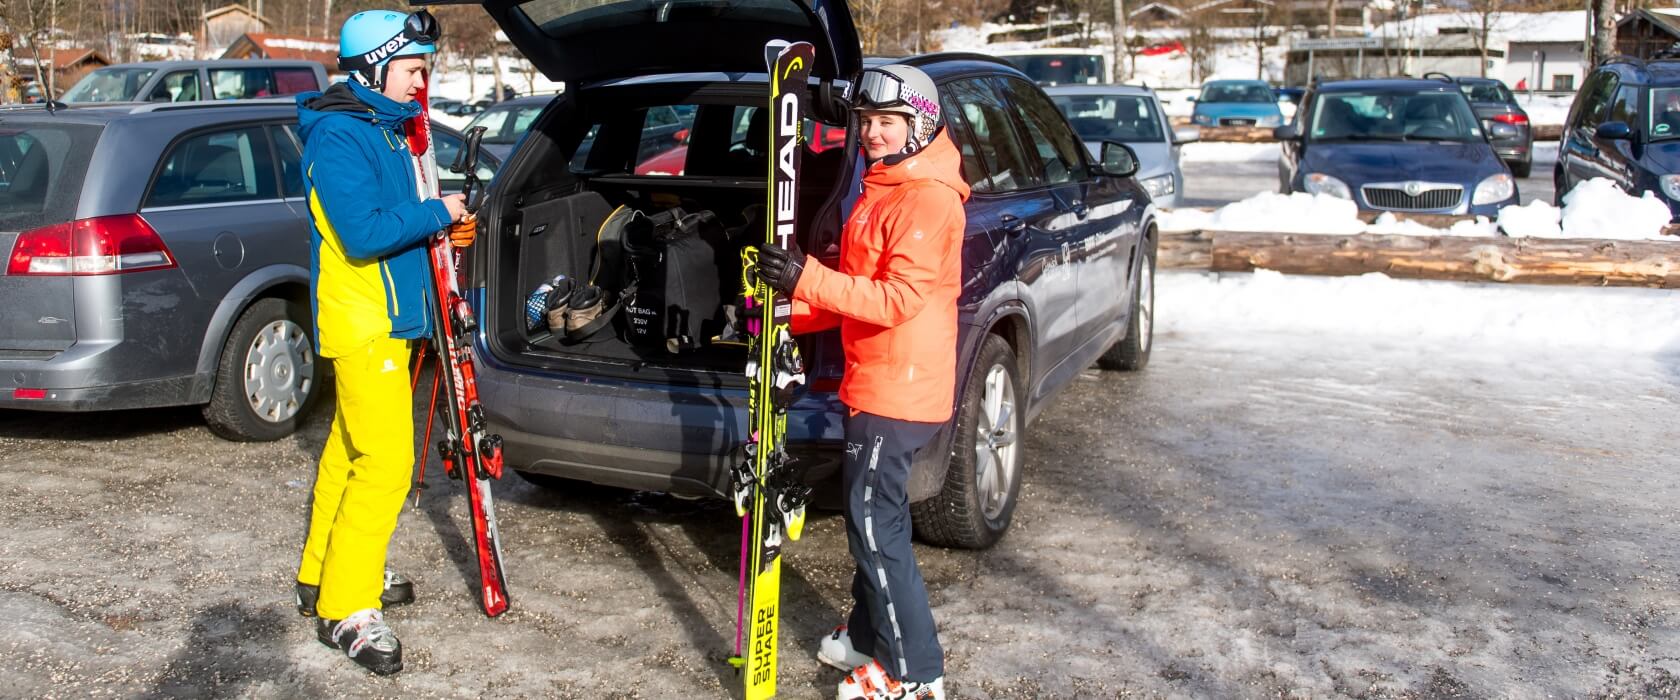 Skifahrer am Auto mit Ausrüstung für den Skisport